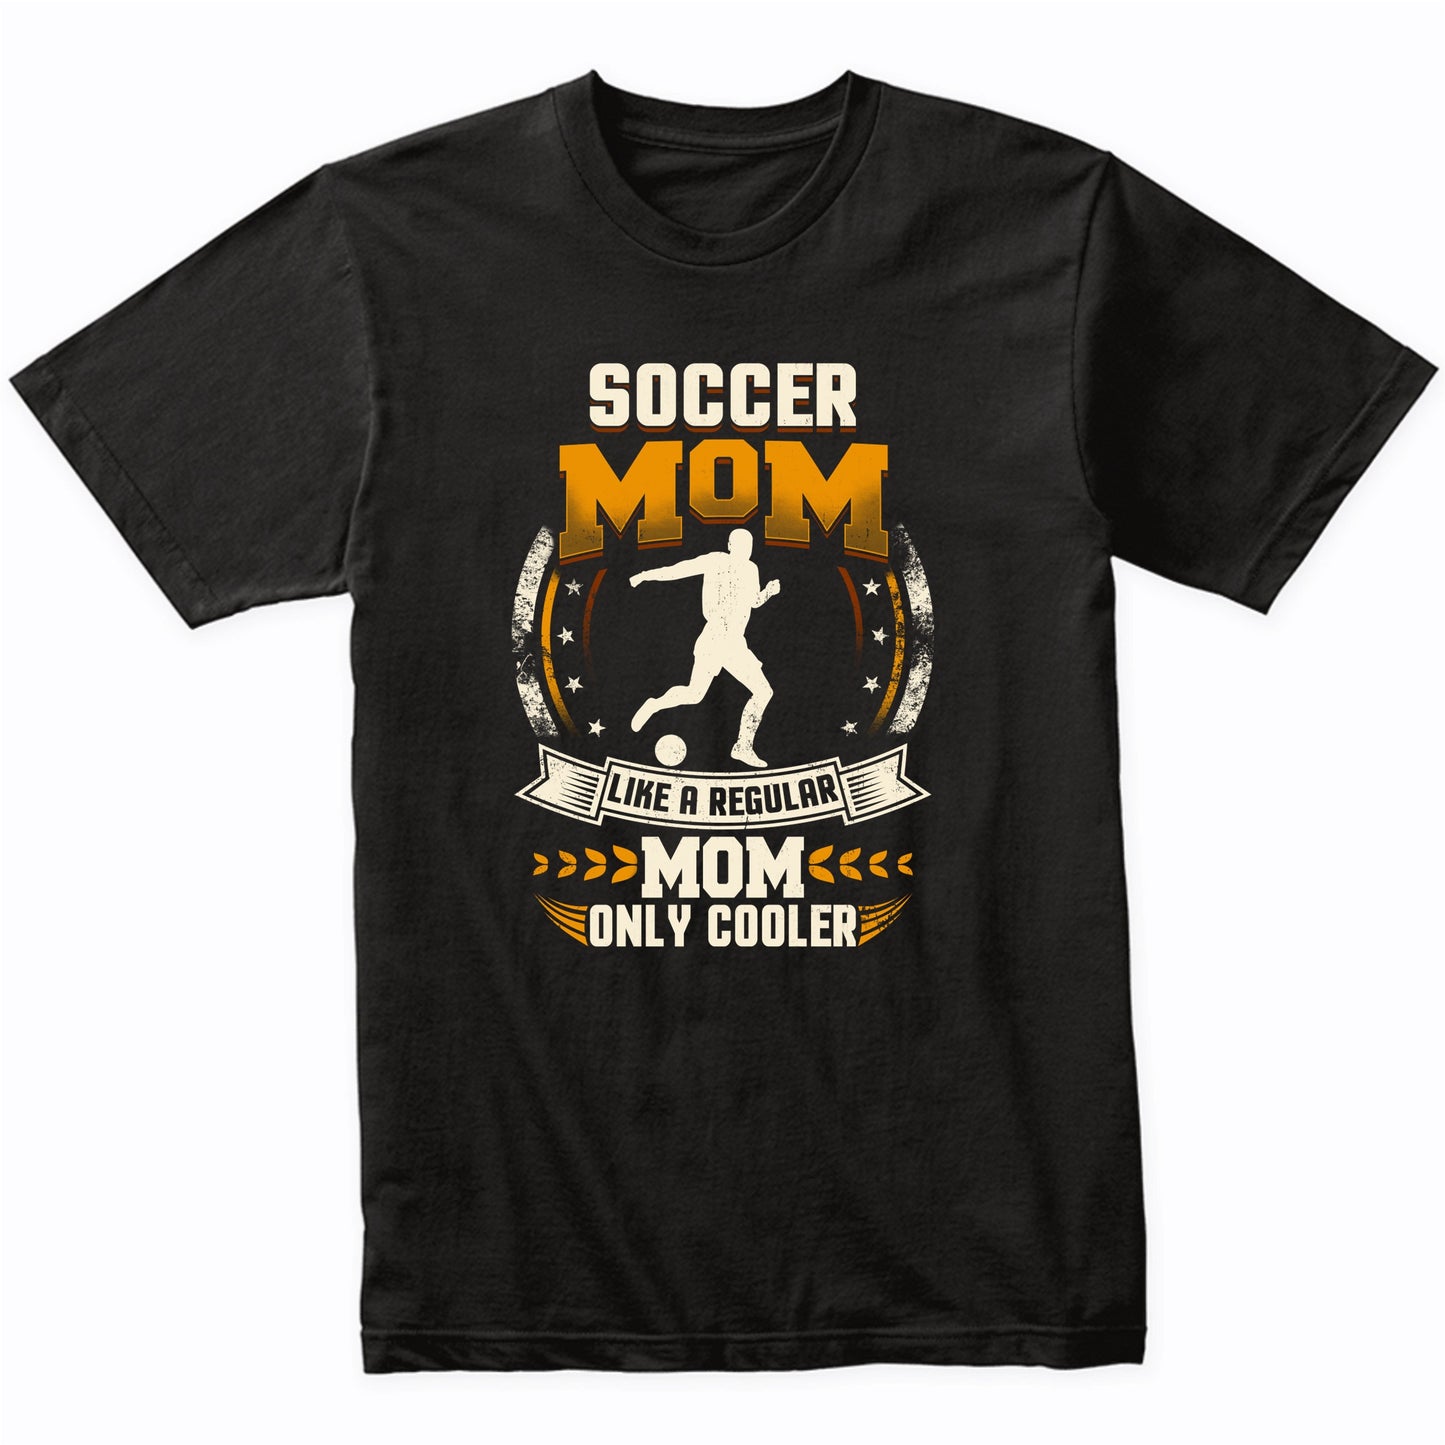 Soccer Mom Like A Regular Mom Only Cooler Funny T-Shirt